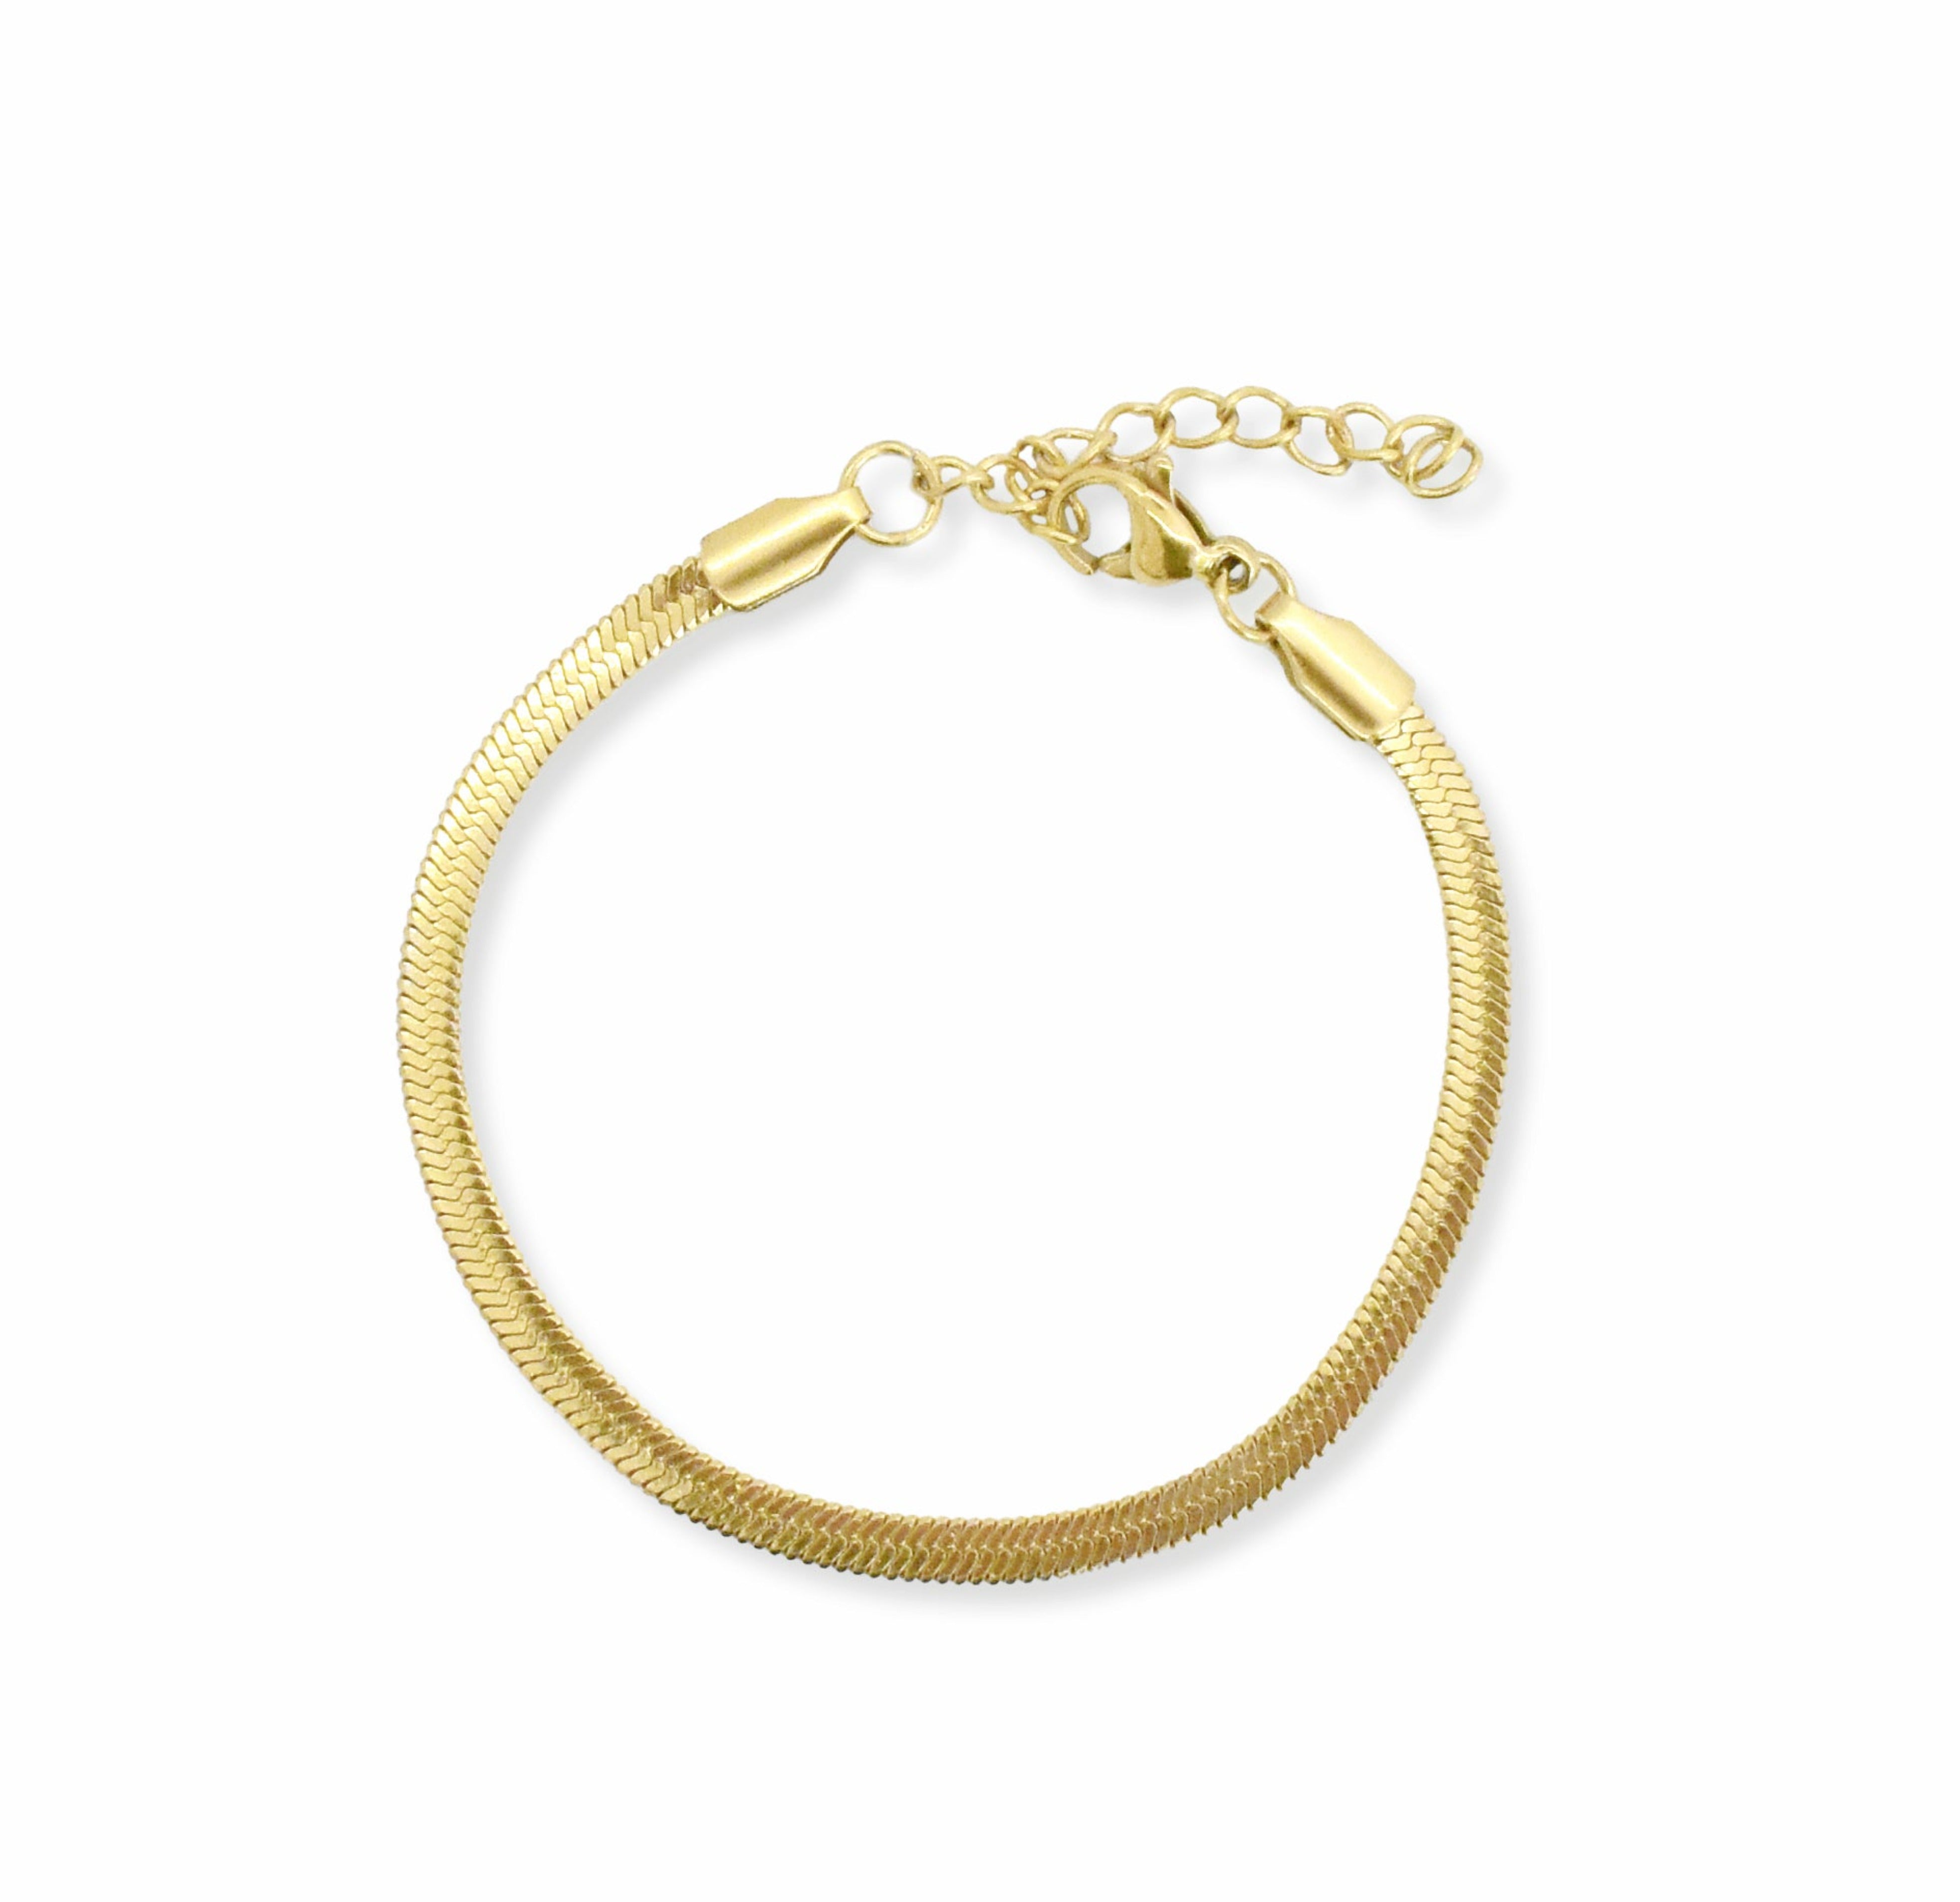 gold snake chain bracelet waterproof jewelry